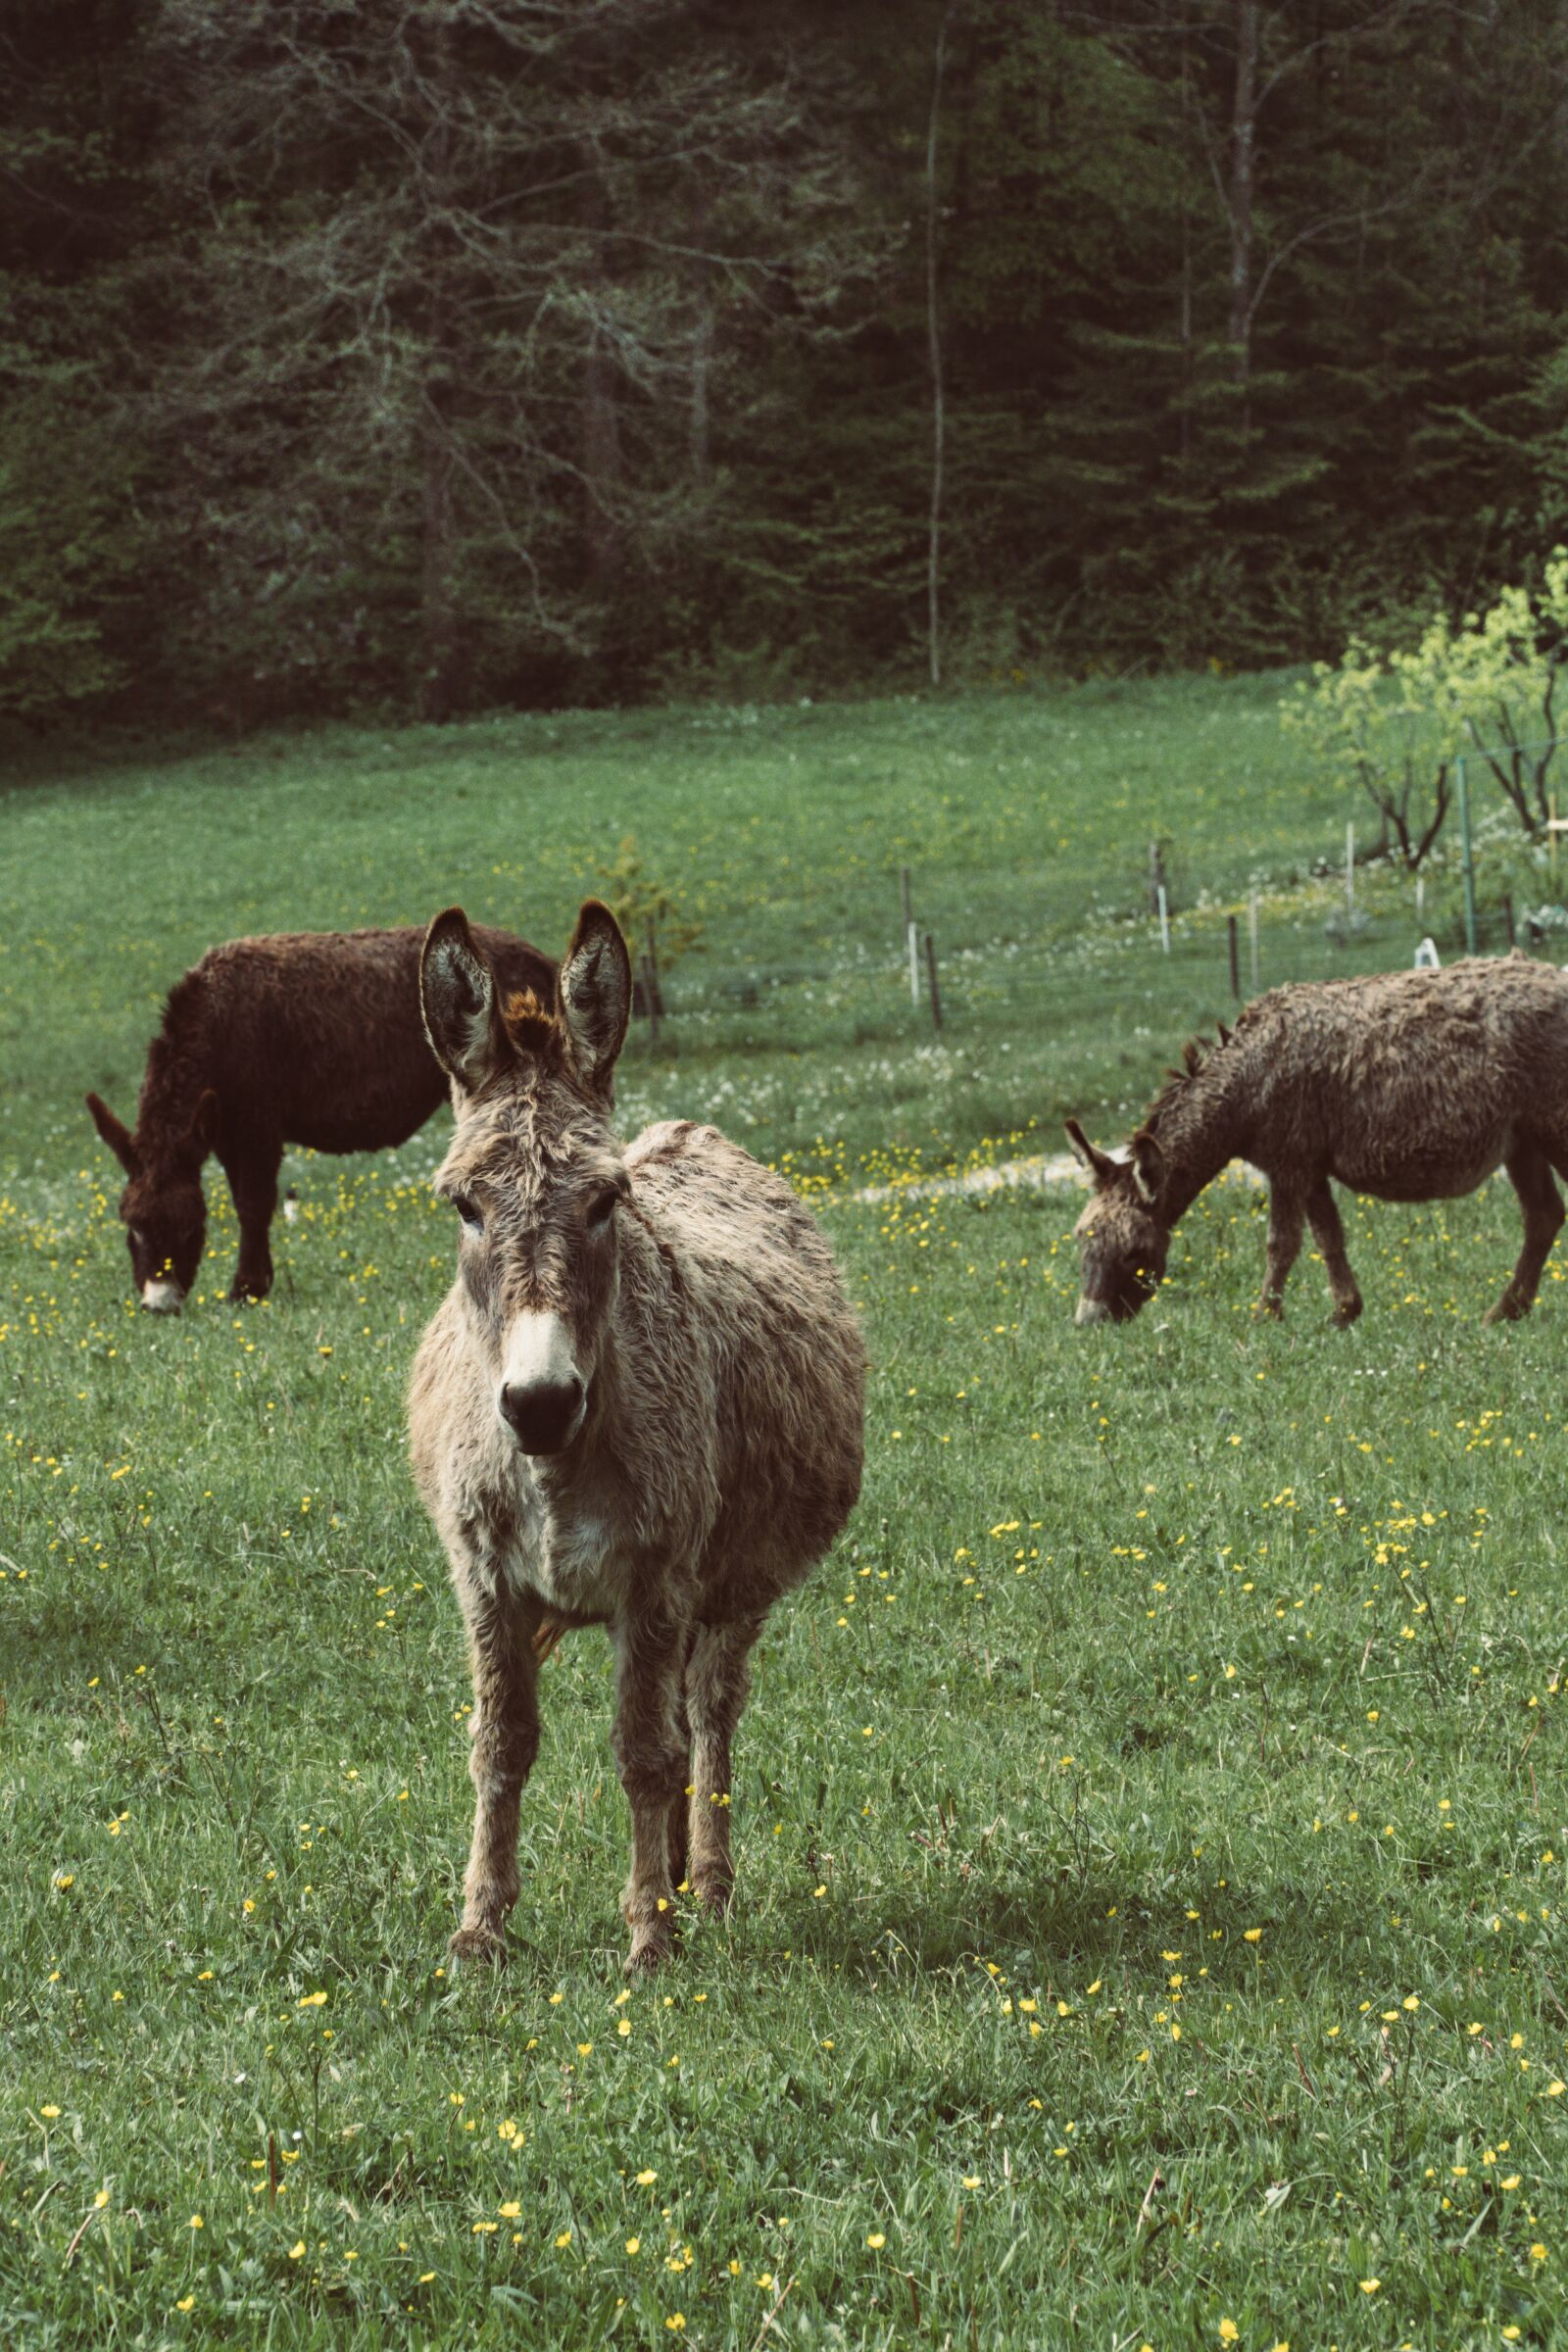 Sony a6500 sample photo. Donkey, farm, animal photography